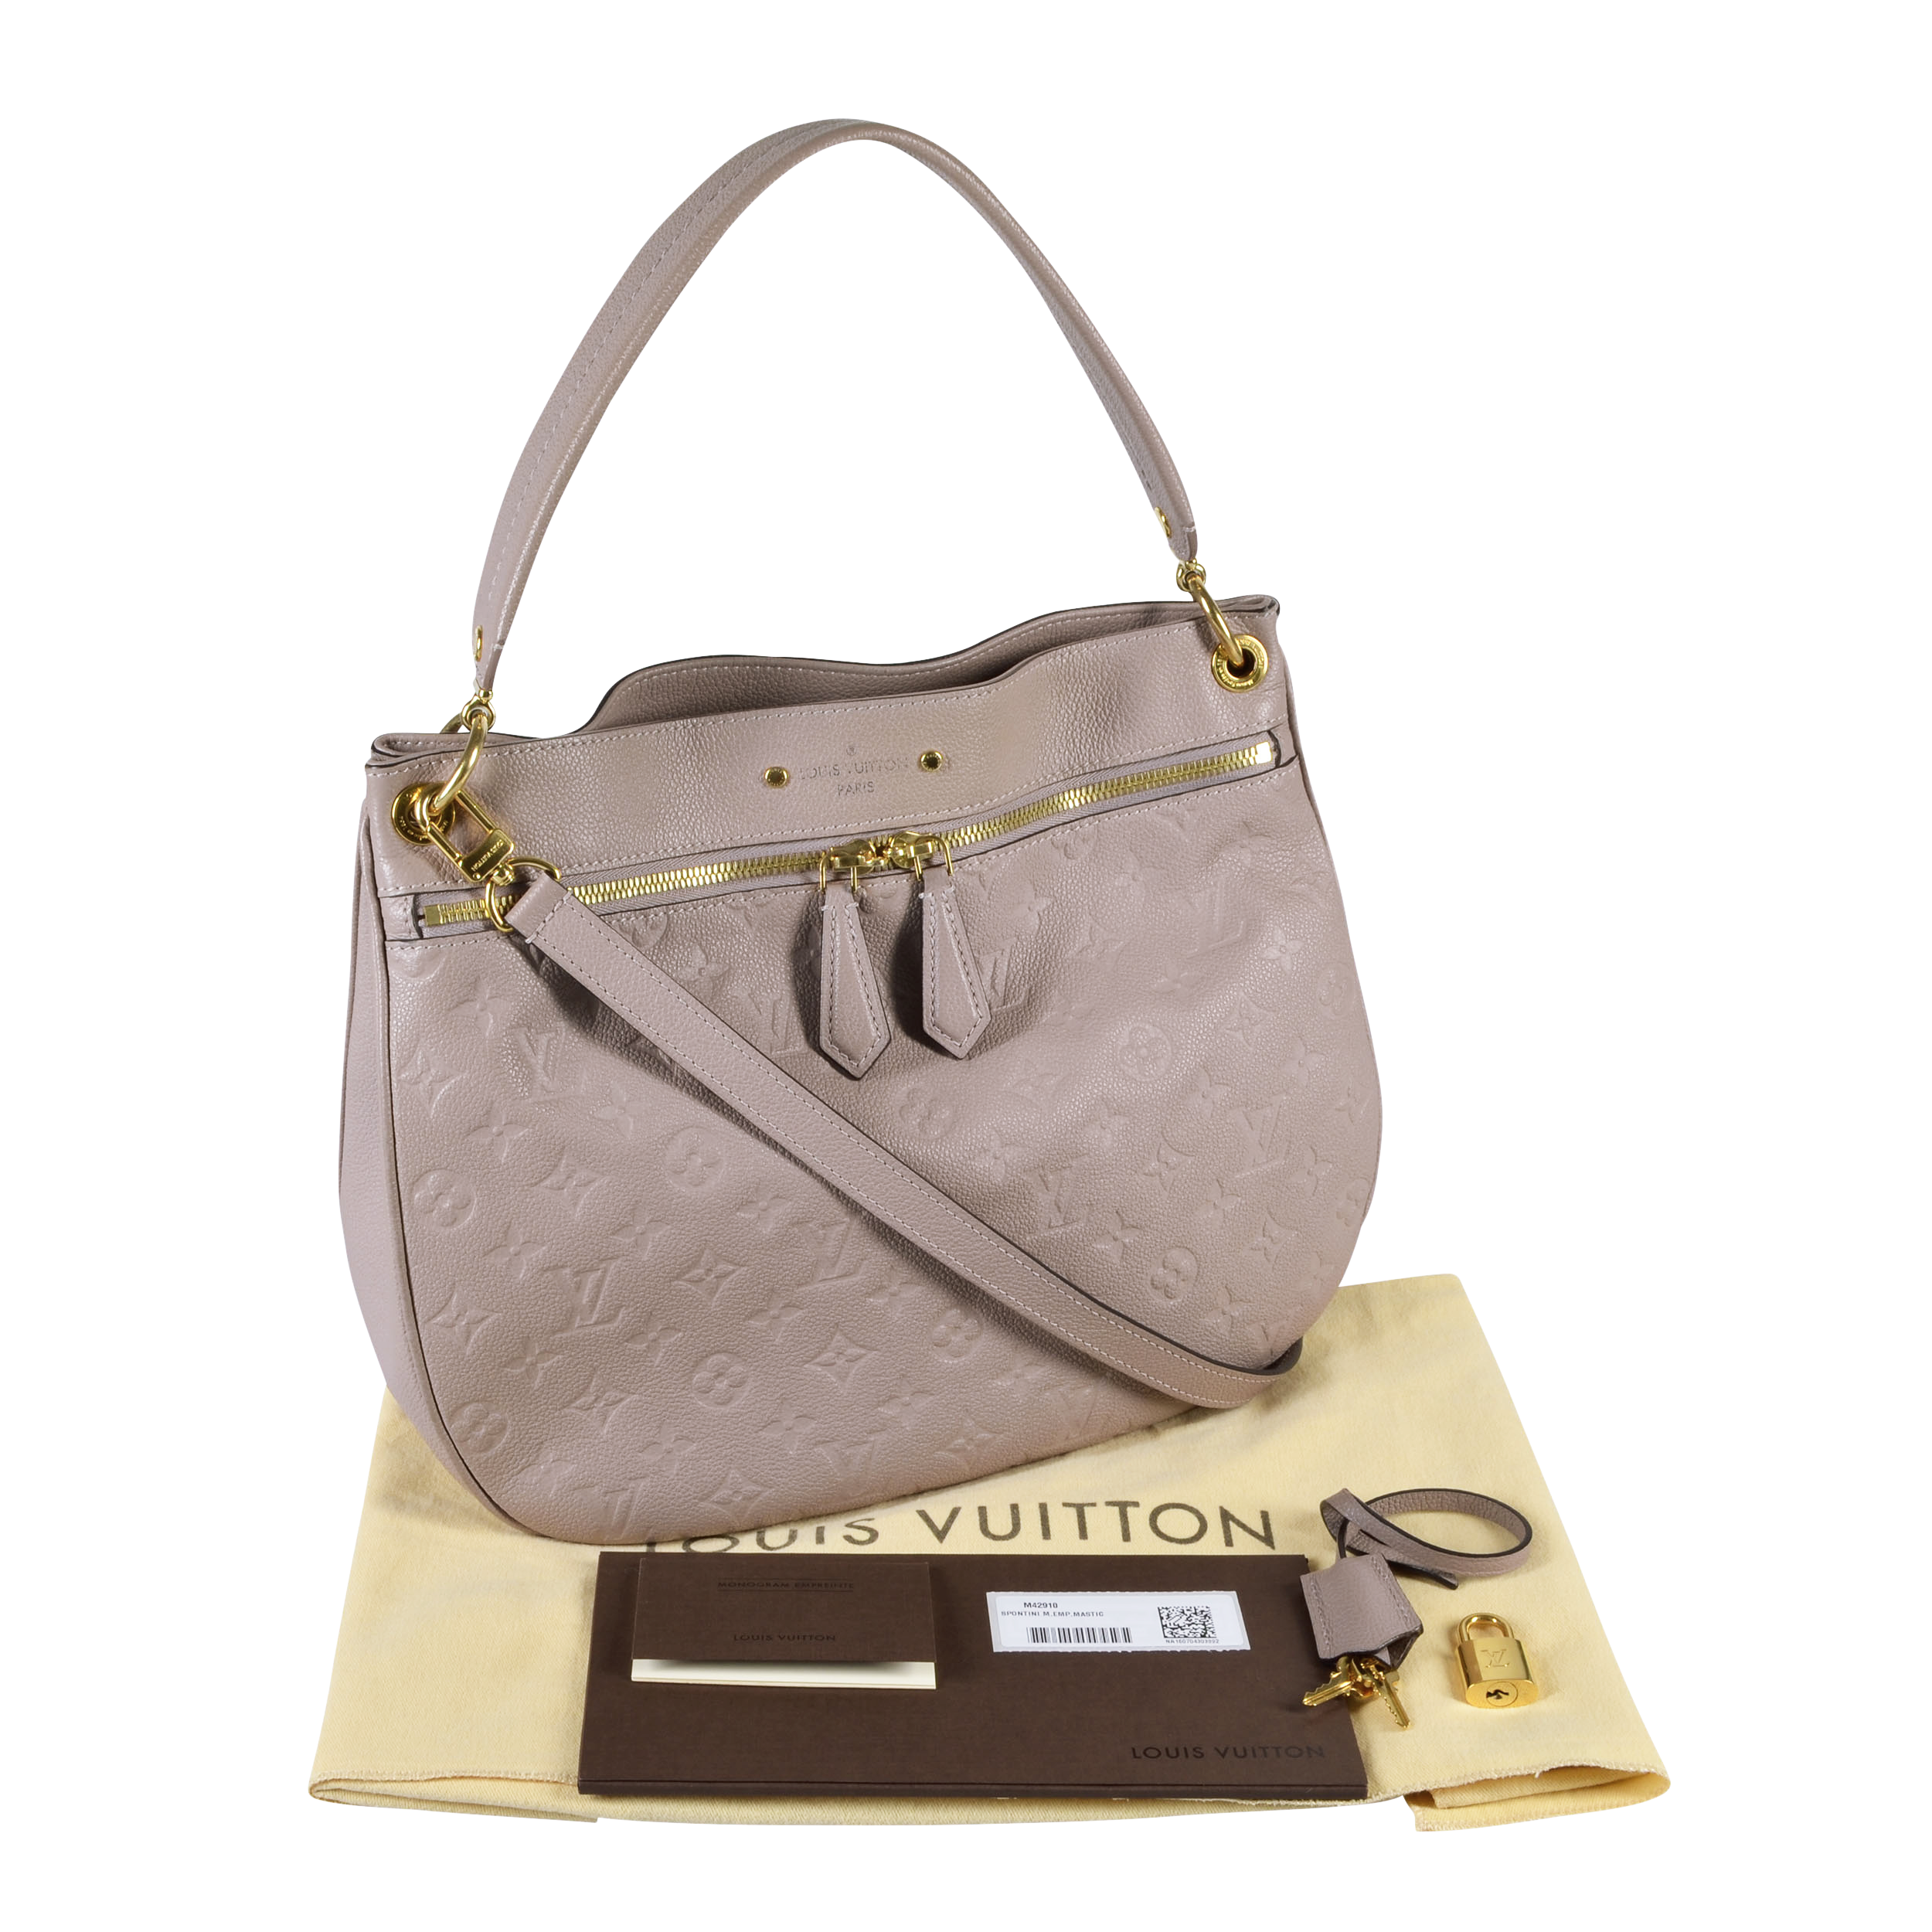 LOUIS VUITTON M42910 Handbag Spontini Empreinte worn by Herself